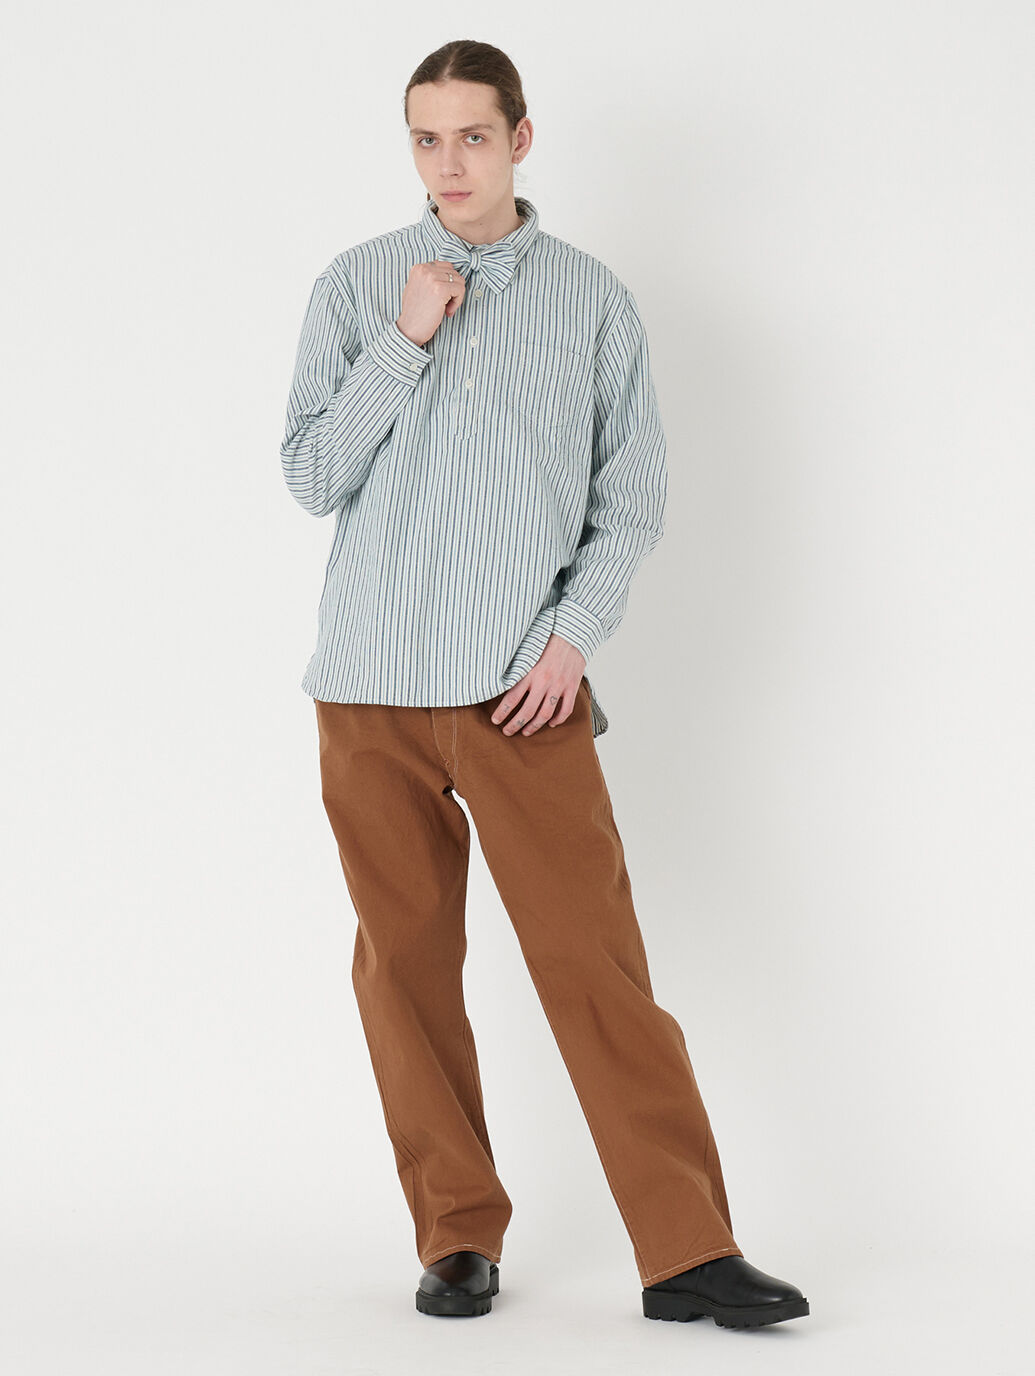 LEVI'S VINTAGE CLOTHING カジュアルシャツ -(M位)なし伸縮性